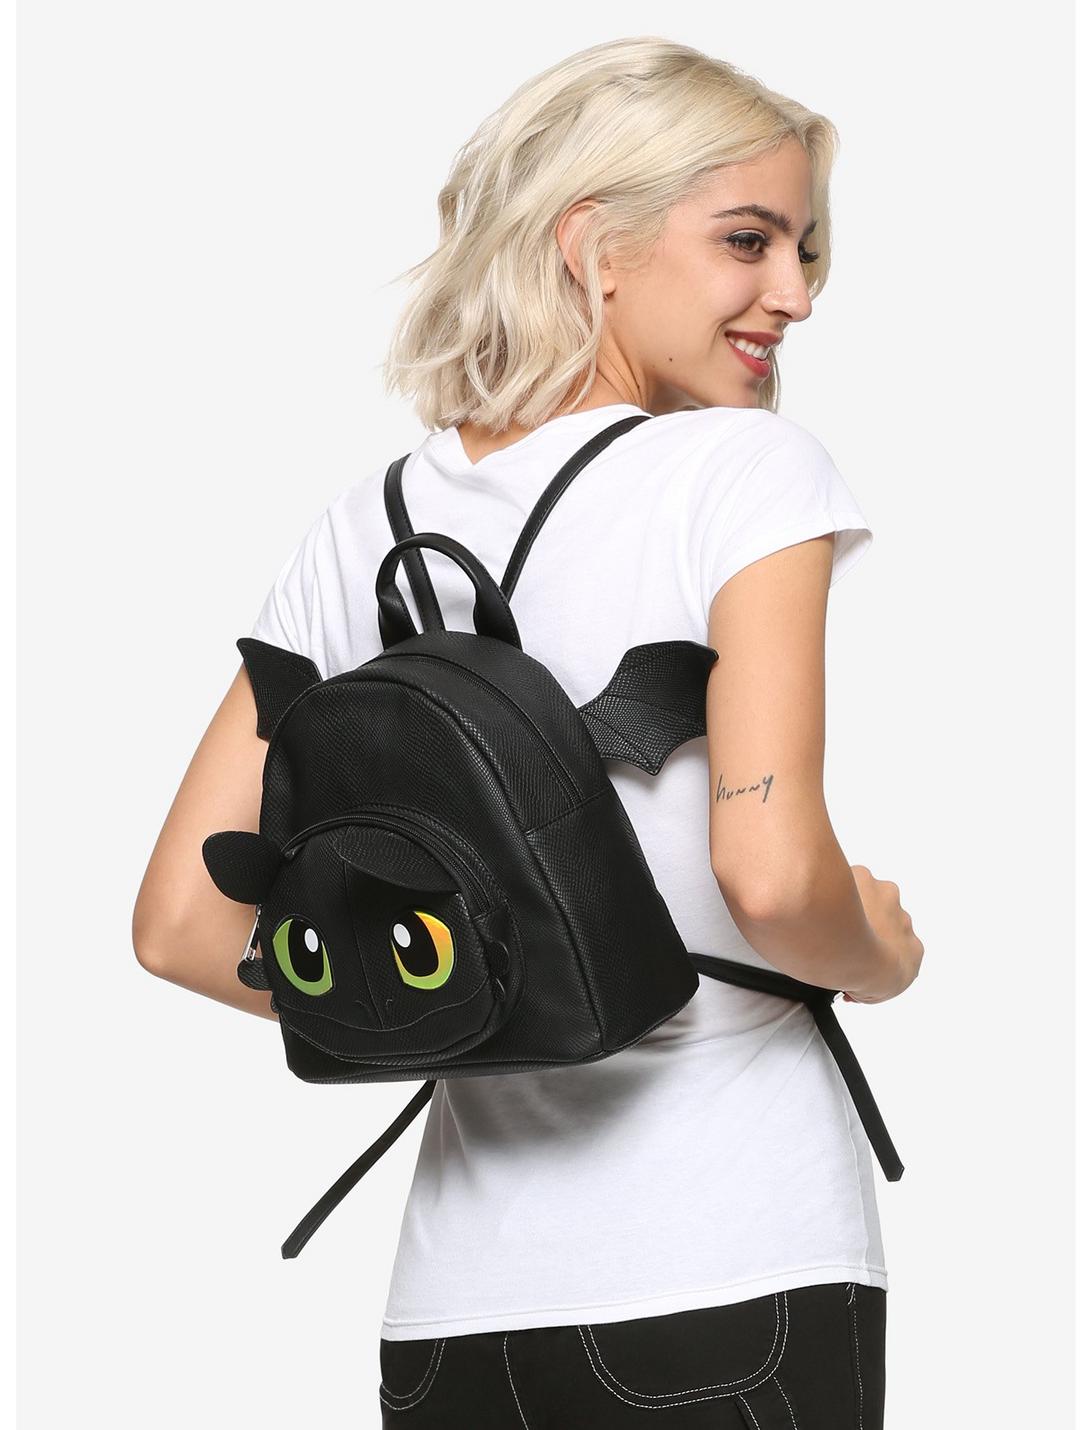 DreamWorks Dragons Adult Backpack 